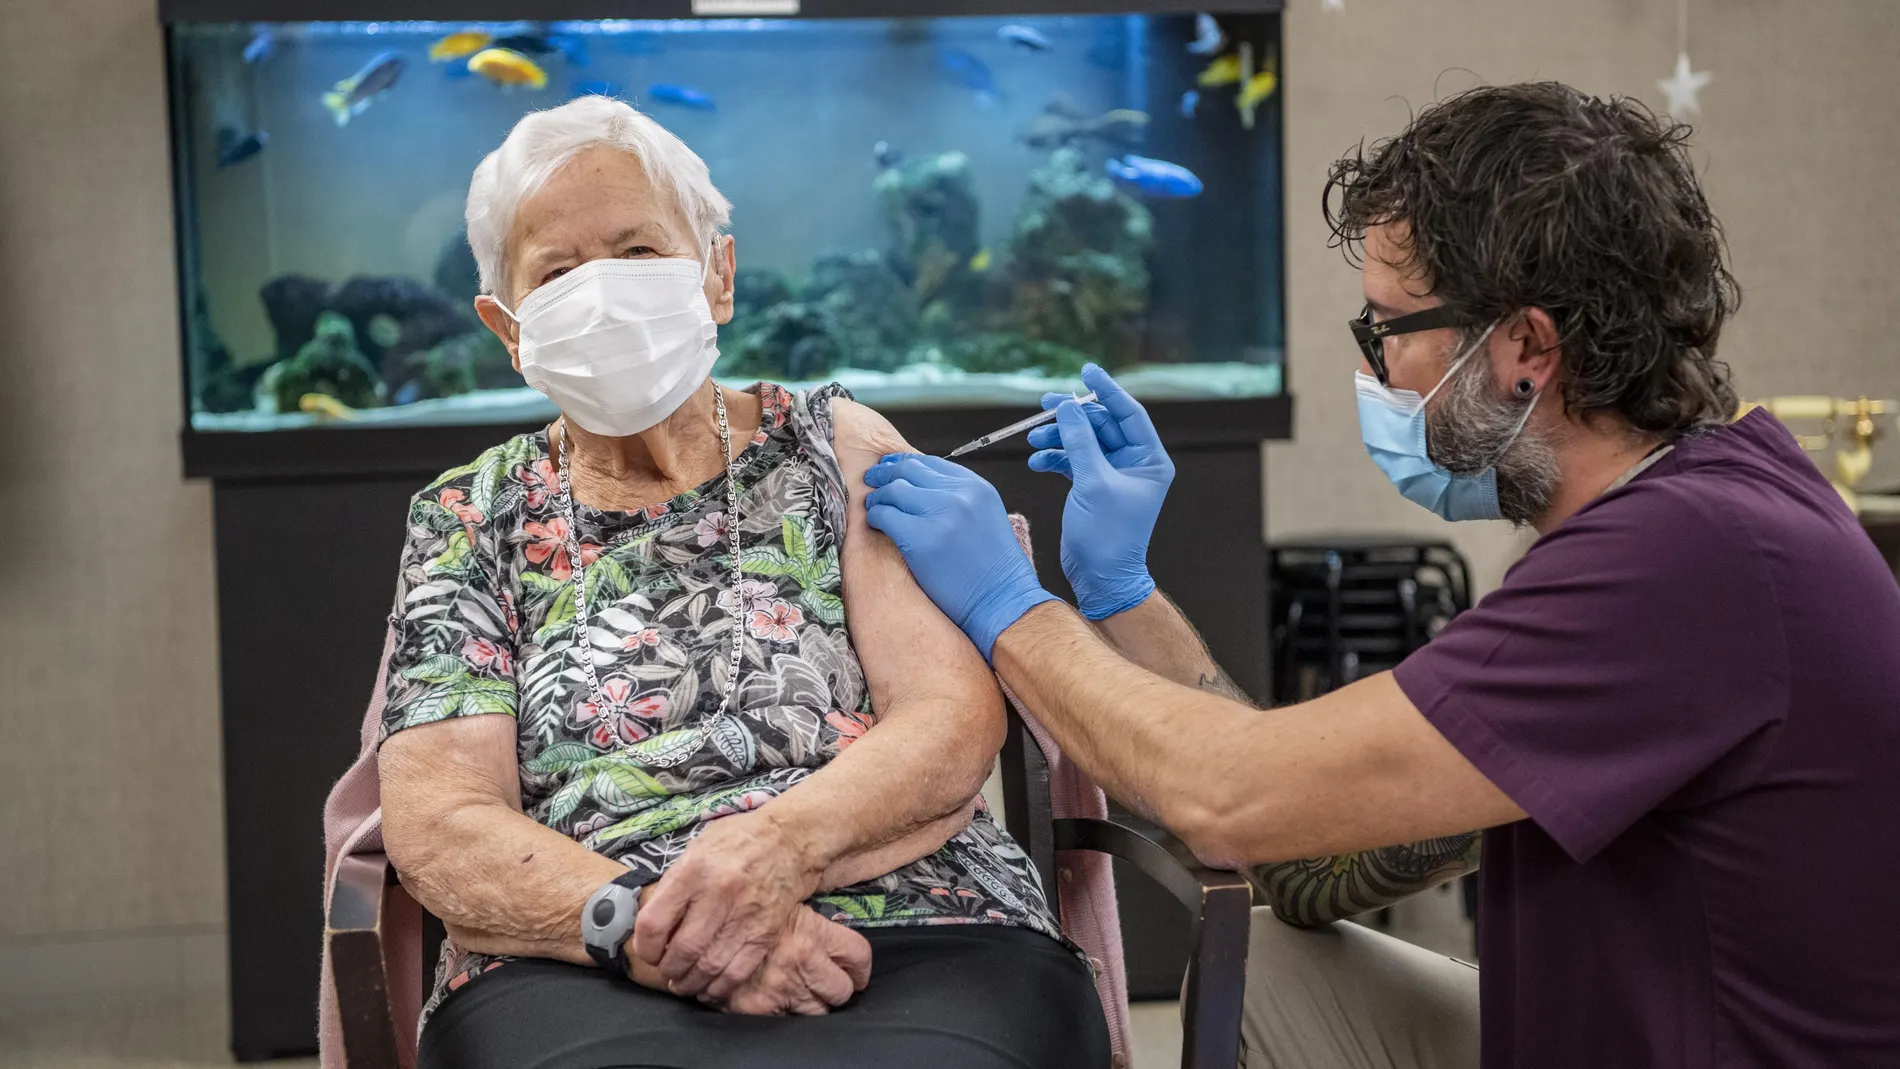 Una mujer de 90 años se convierte en la primera persona en el cantón de Lucerna en recibir la vacuna de Pfizer-BioNTech contra la Covid-19 este miércoles en Suiza